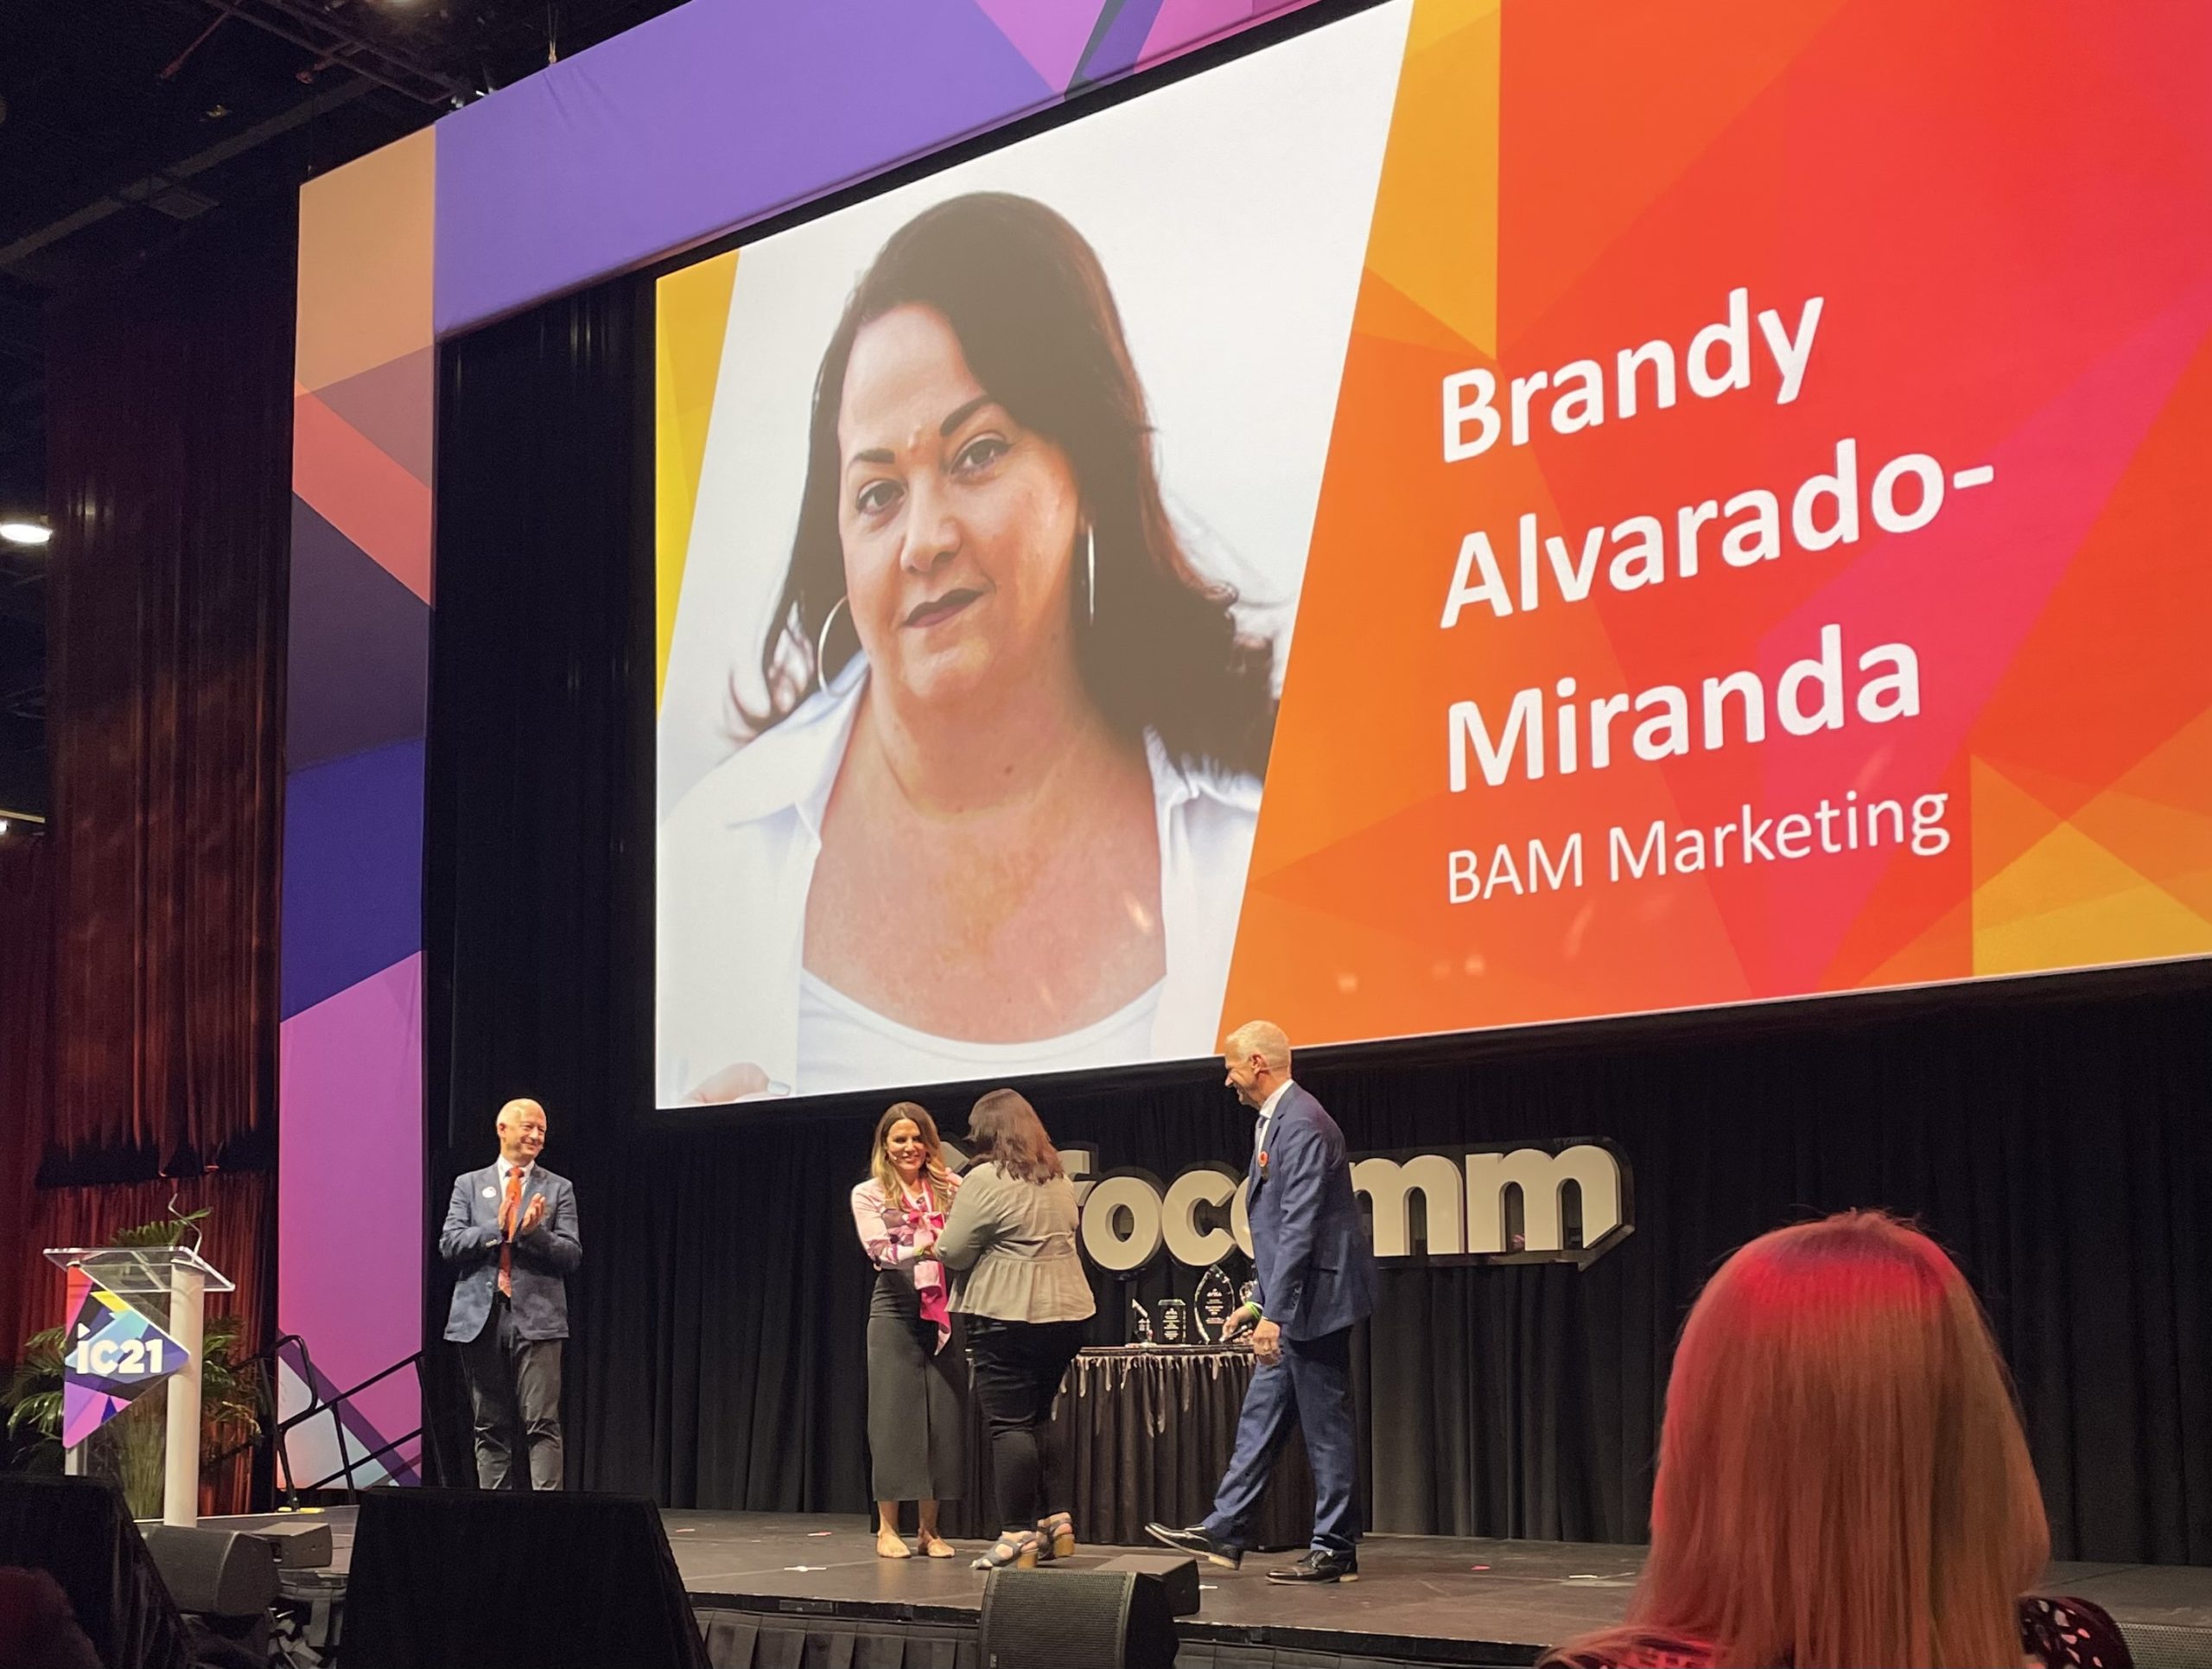 Brandy Alvarado Miranda accepts the Women in AV Award at InfoComm 2021